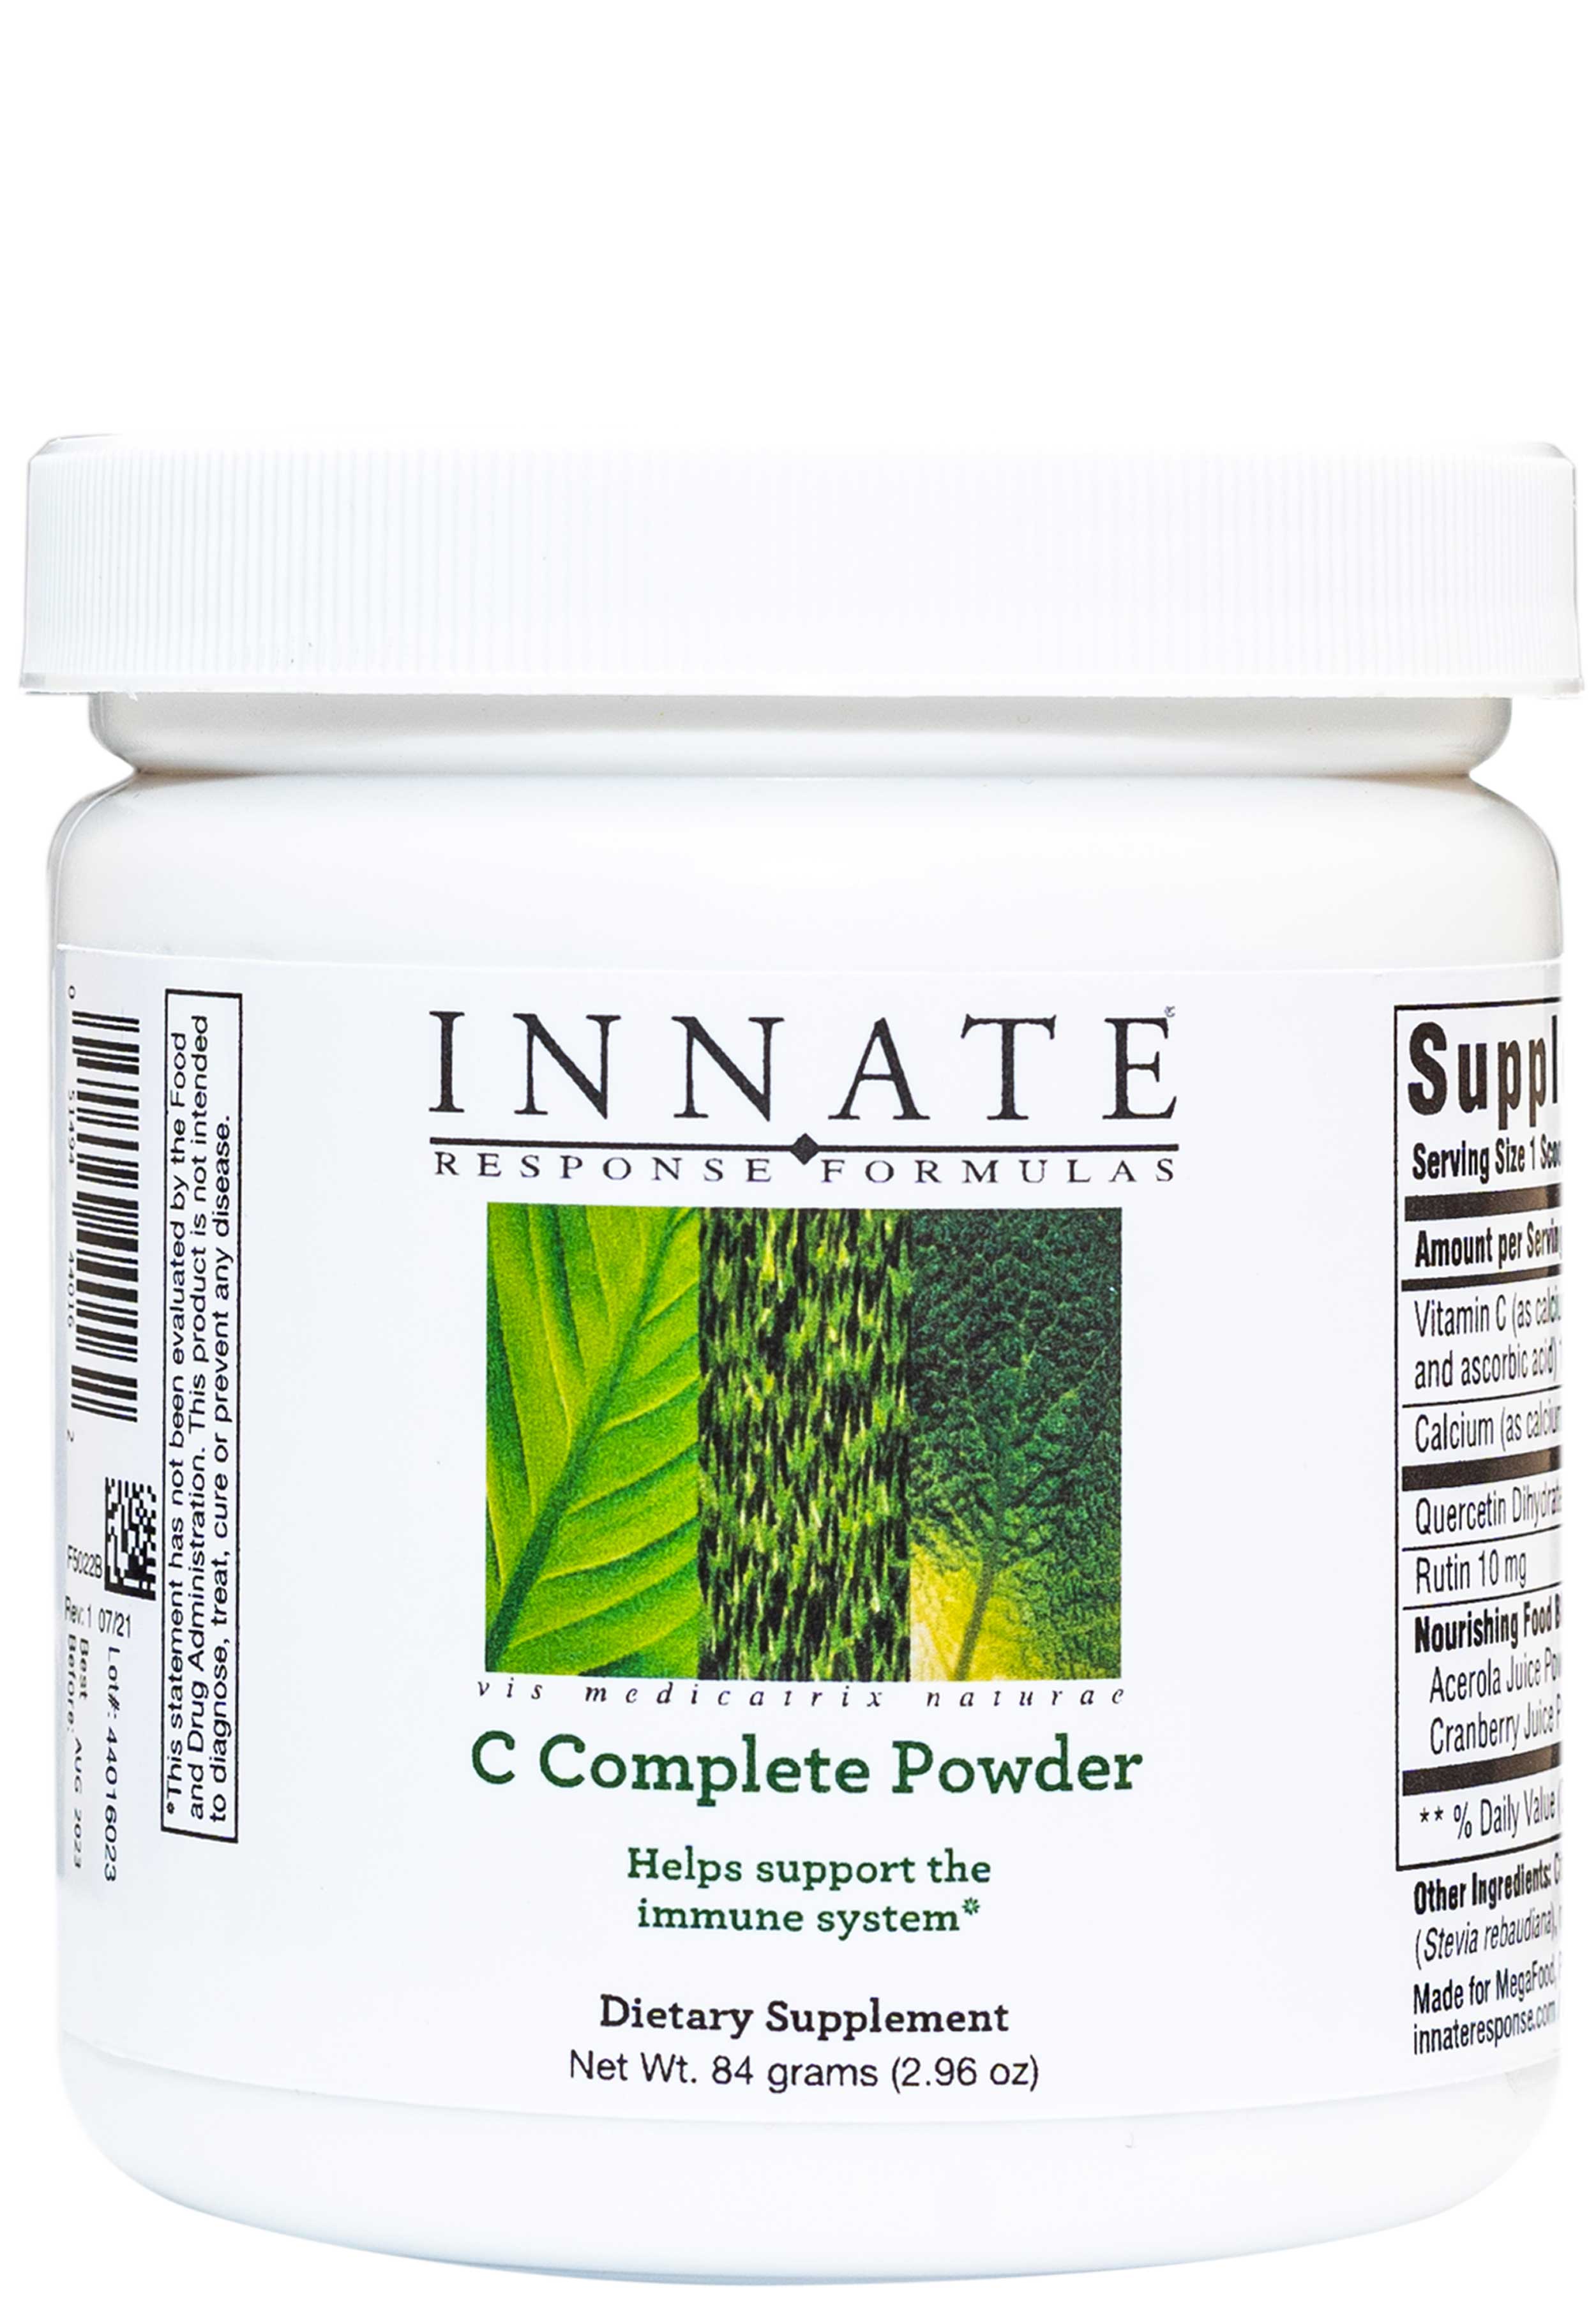 Innate Response Formulas C Complete Powder